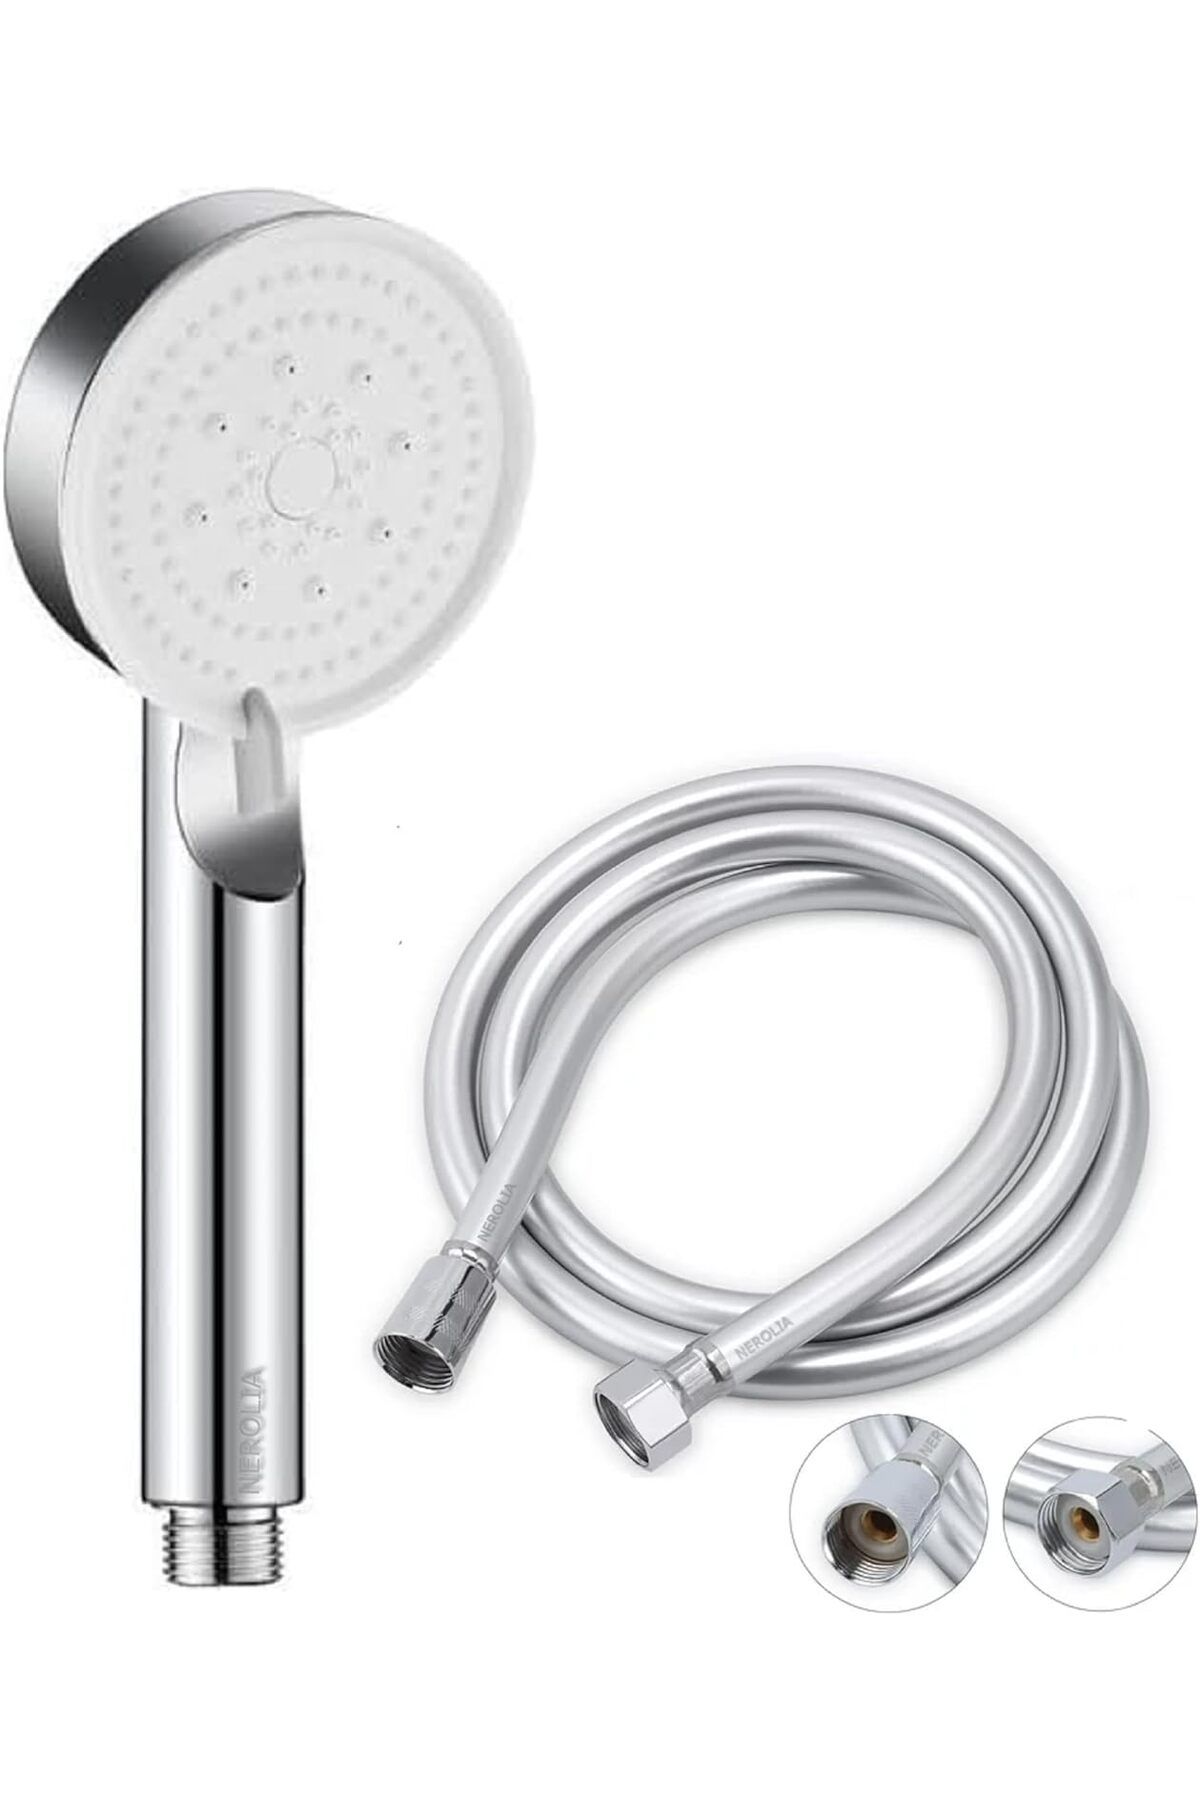 Genel Markalar Turbo Fan Yüksek Basınçlı Duş Seti - Su Tasarruflu Masaj Başlığı ve PVC Banyo Hortumu ile (